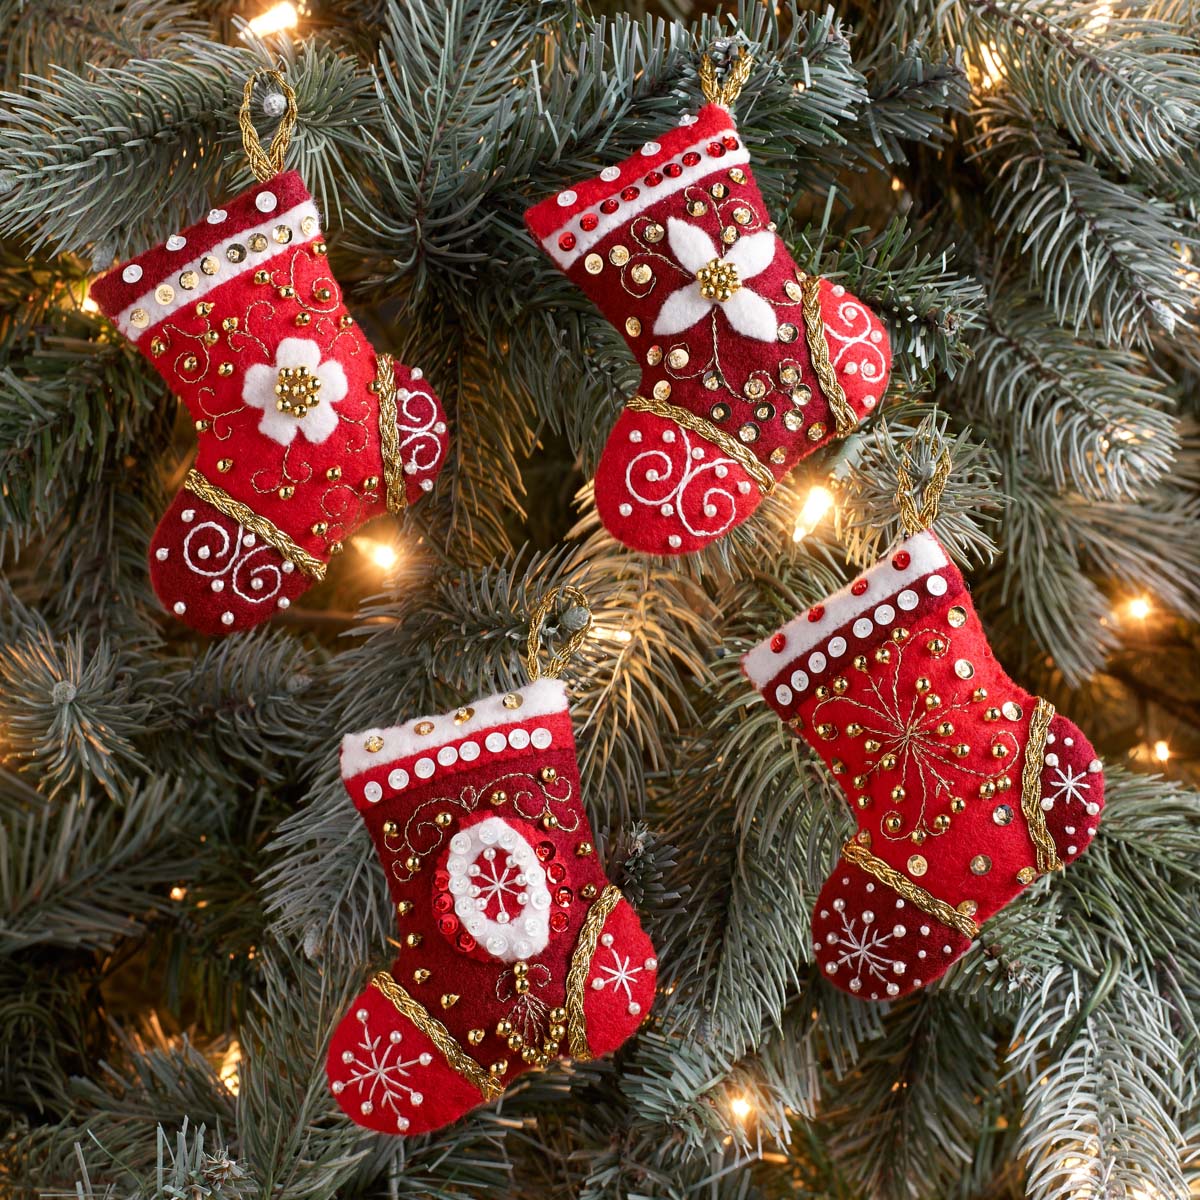 Bucilla ® Seasonal - Felt - Ornament Kits - Holiday Elegance - 89077E